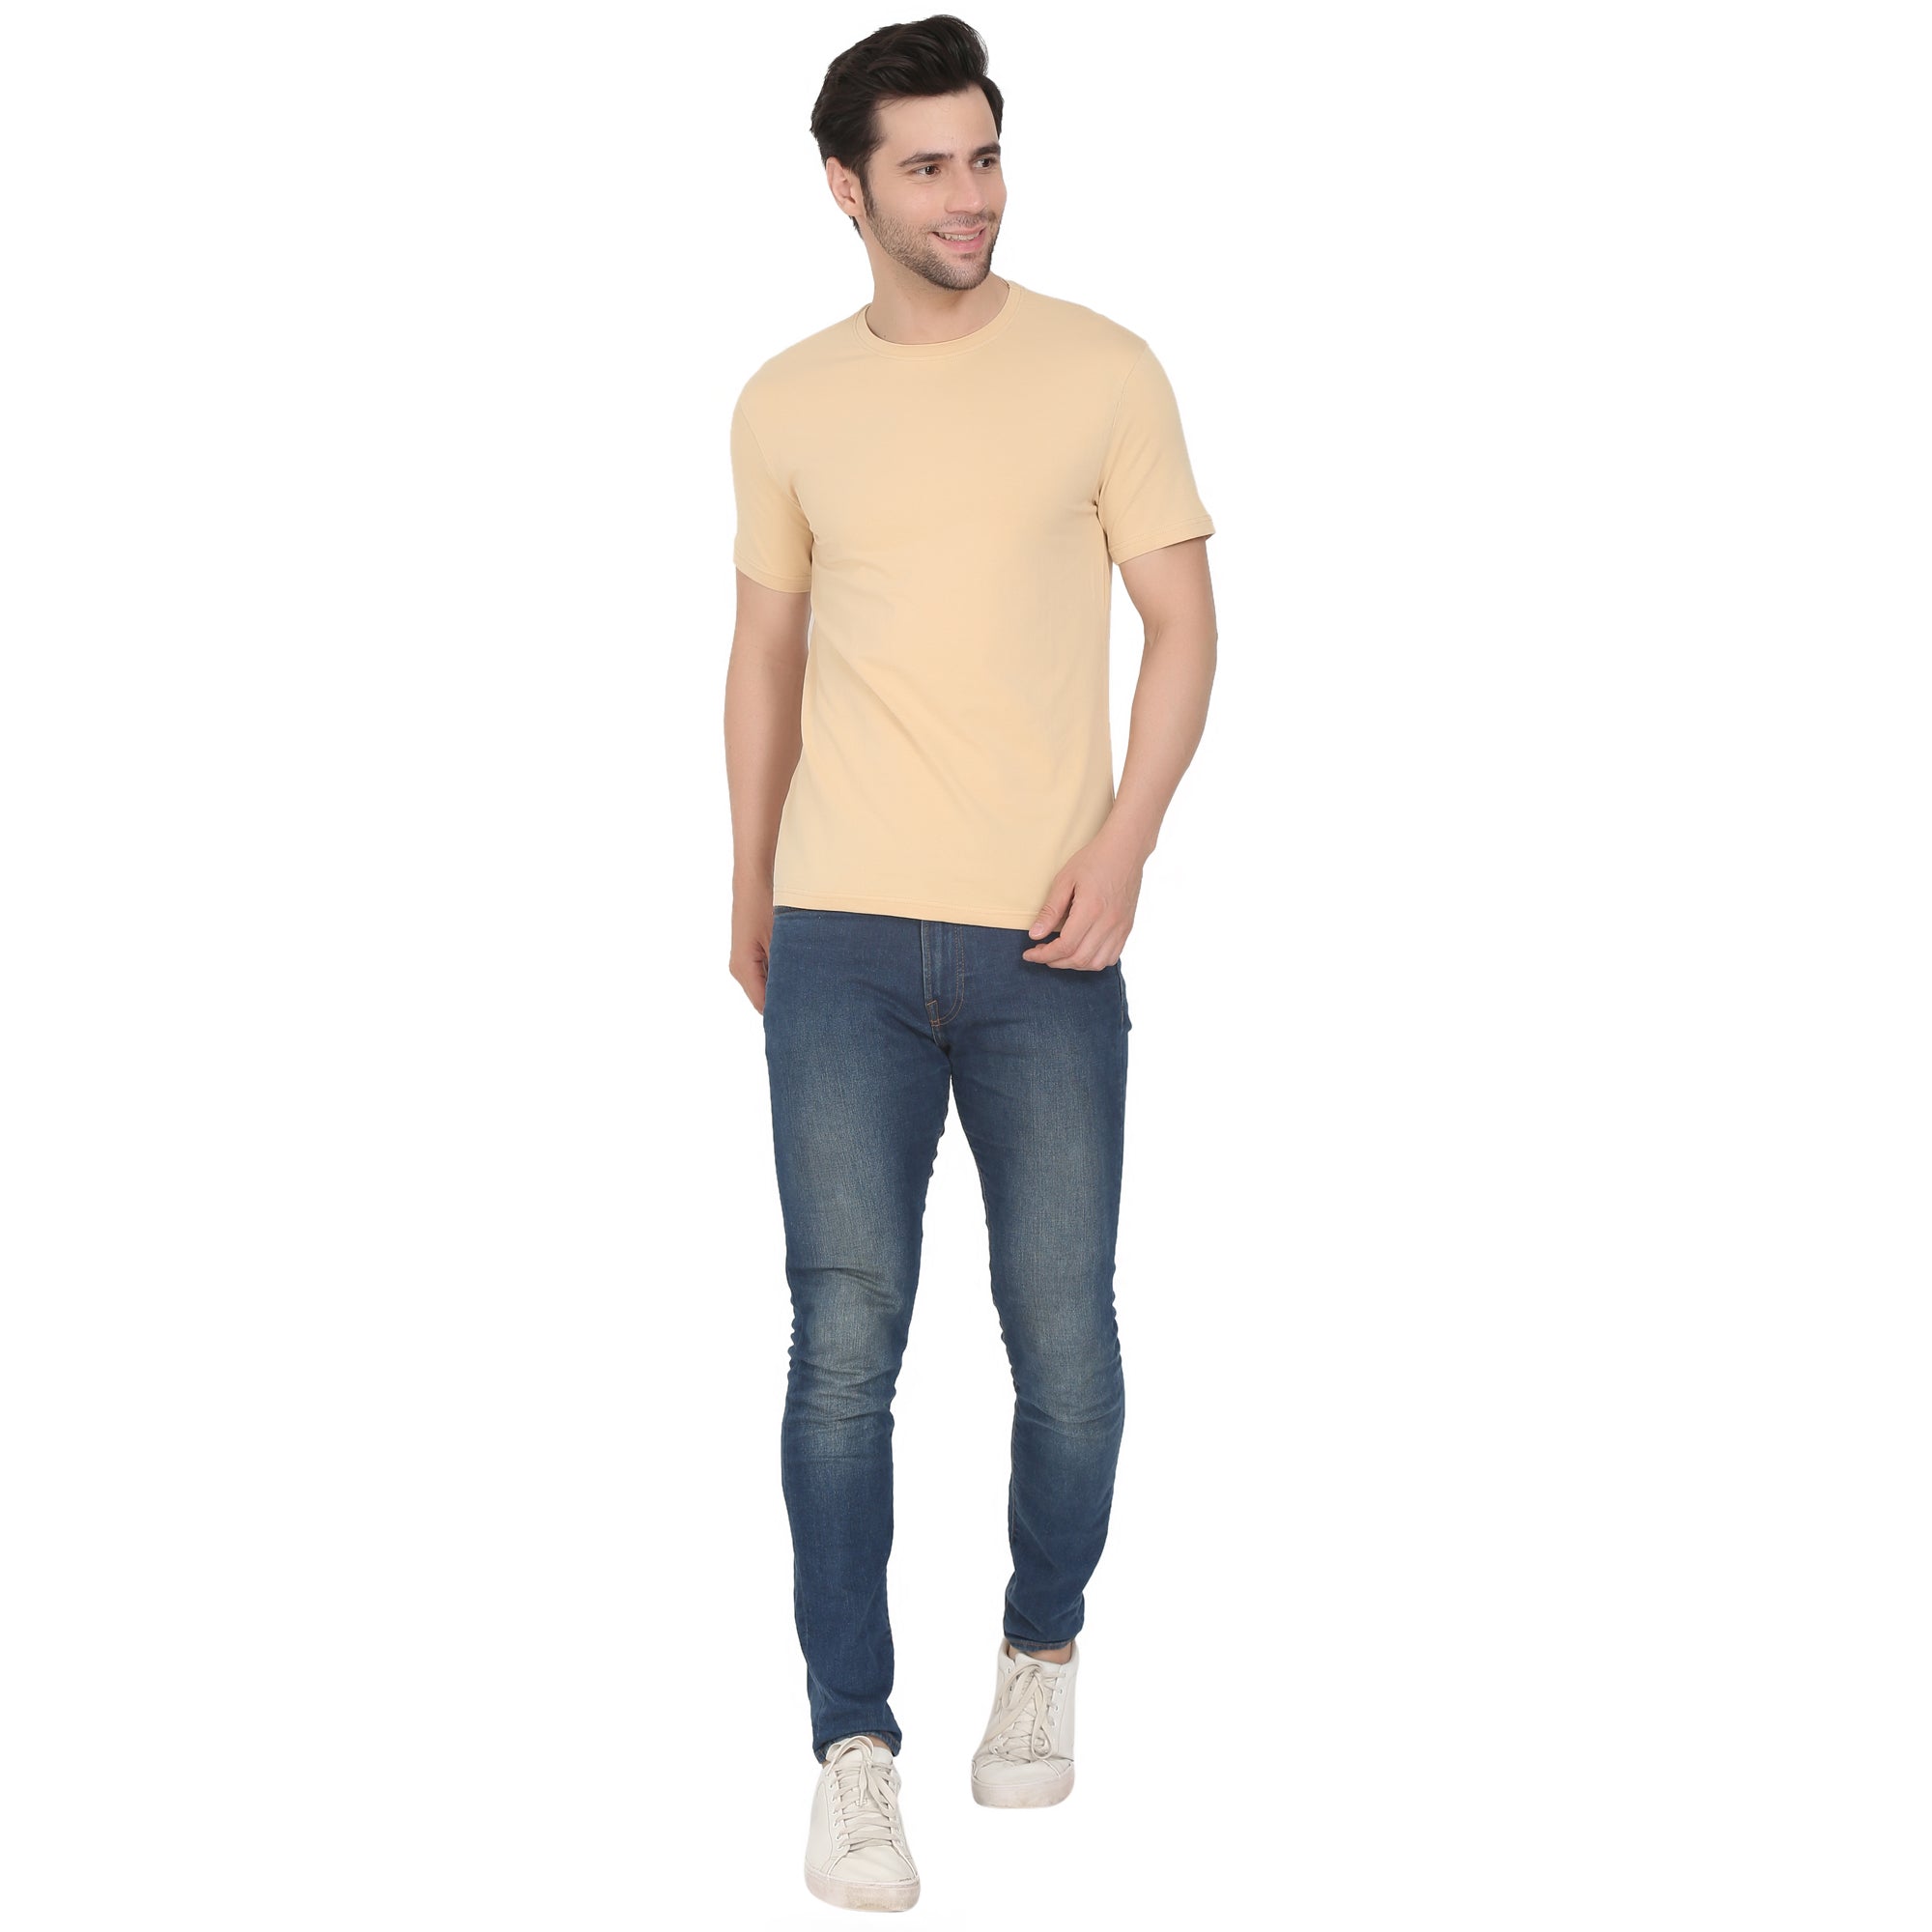 Men Four Way Stretch Cotton Plain T-shirt - Beige Colour